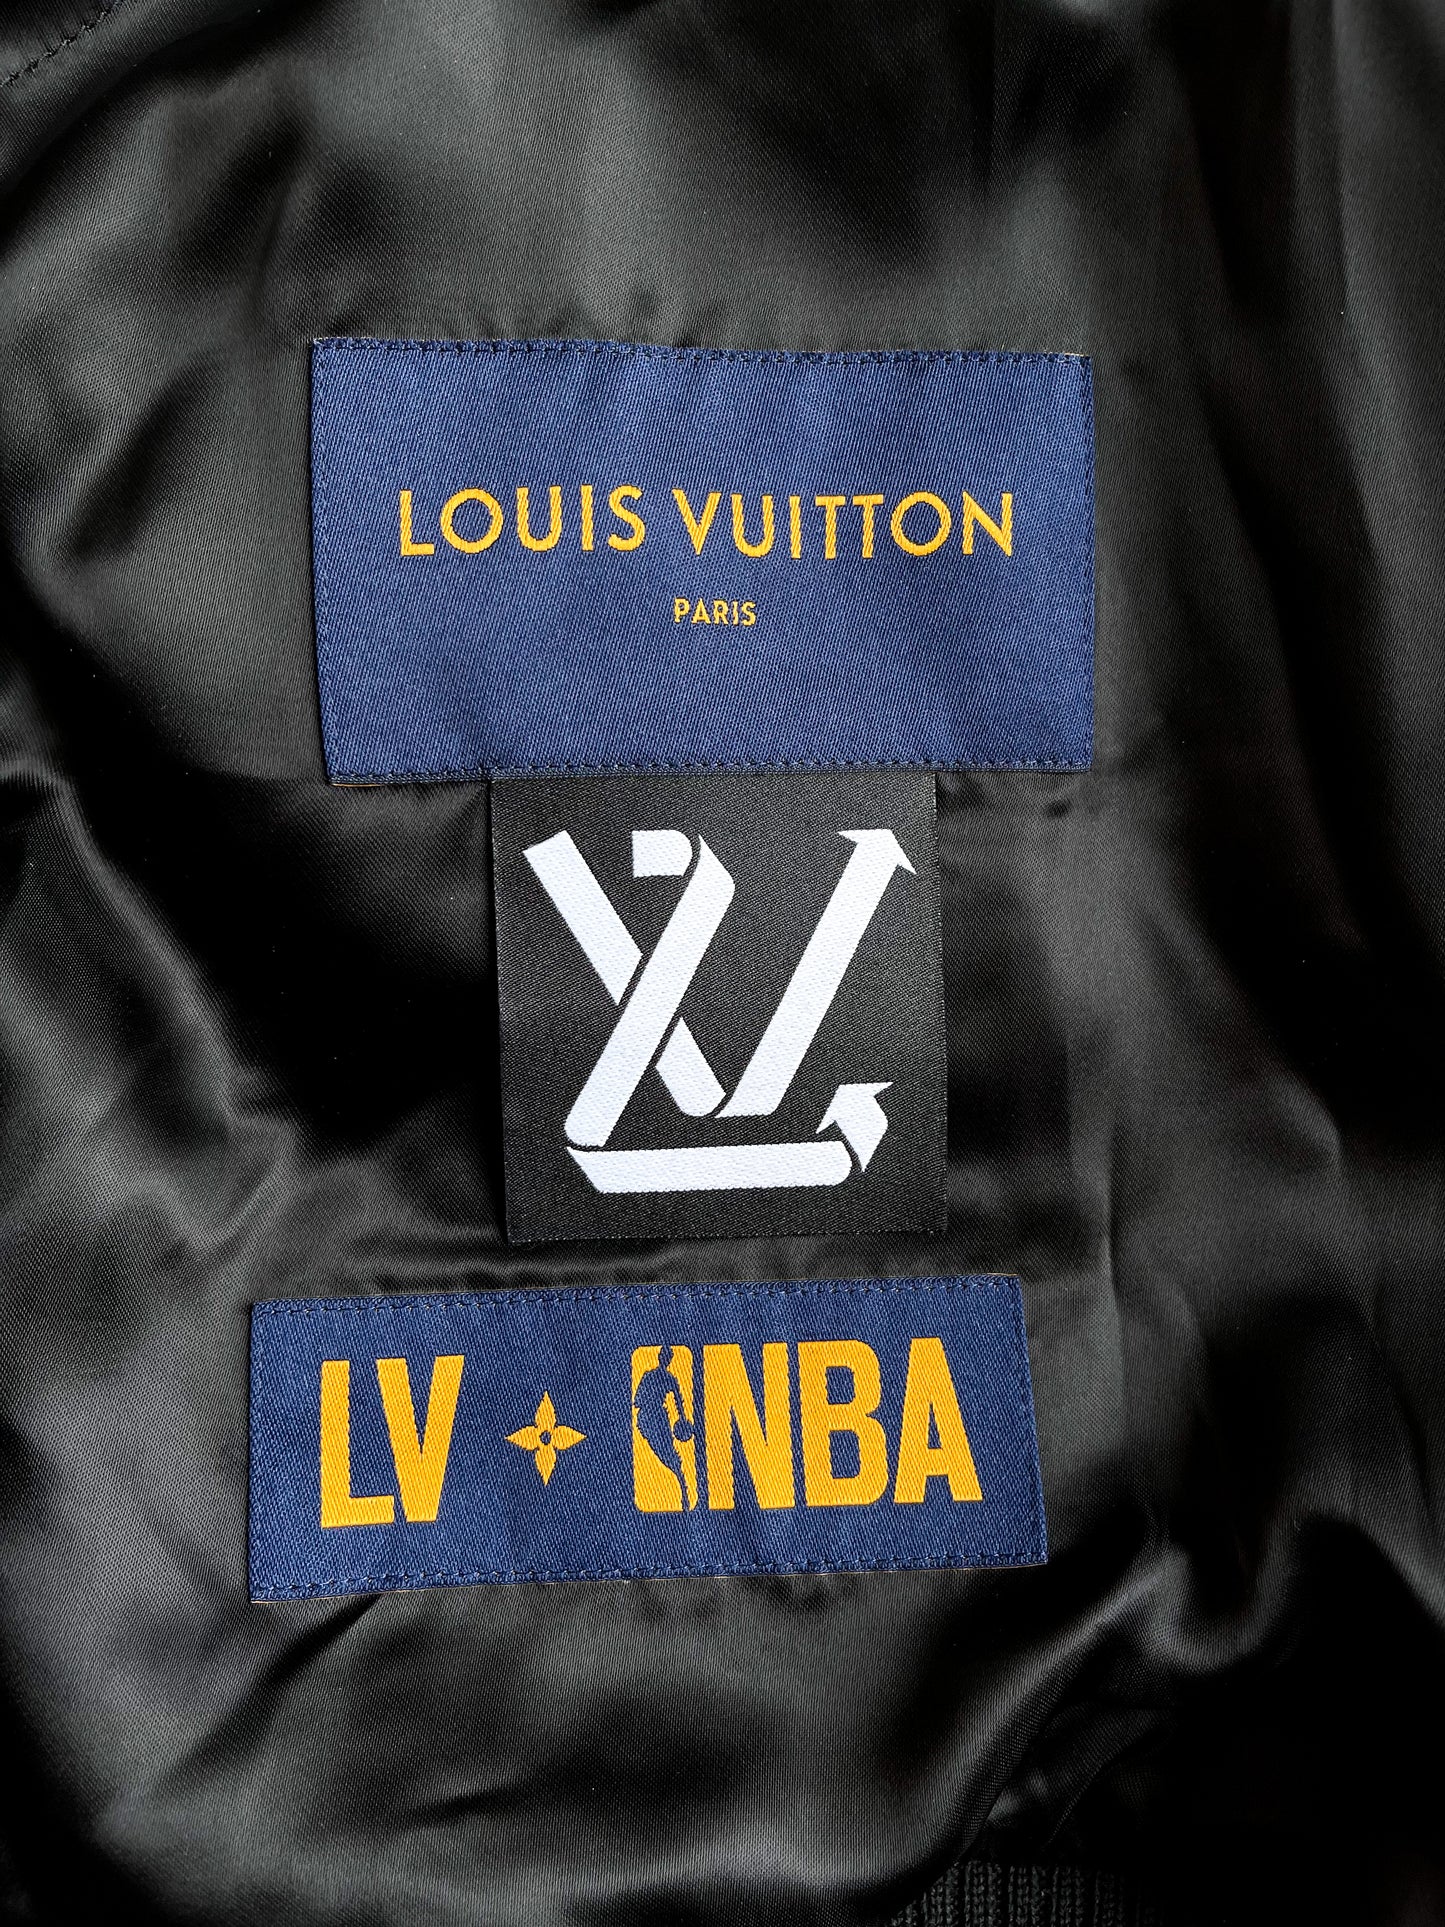 Louis Vuitton X NBA Jackets for Men - Vestiaire Collective